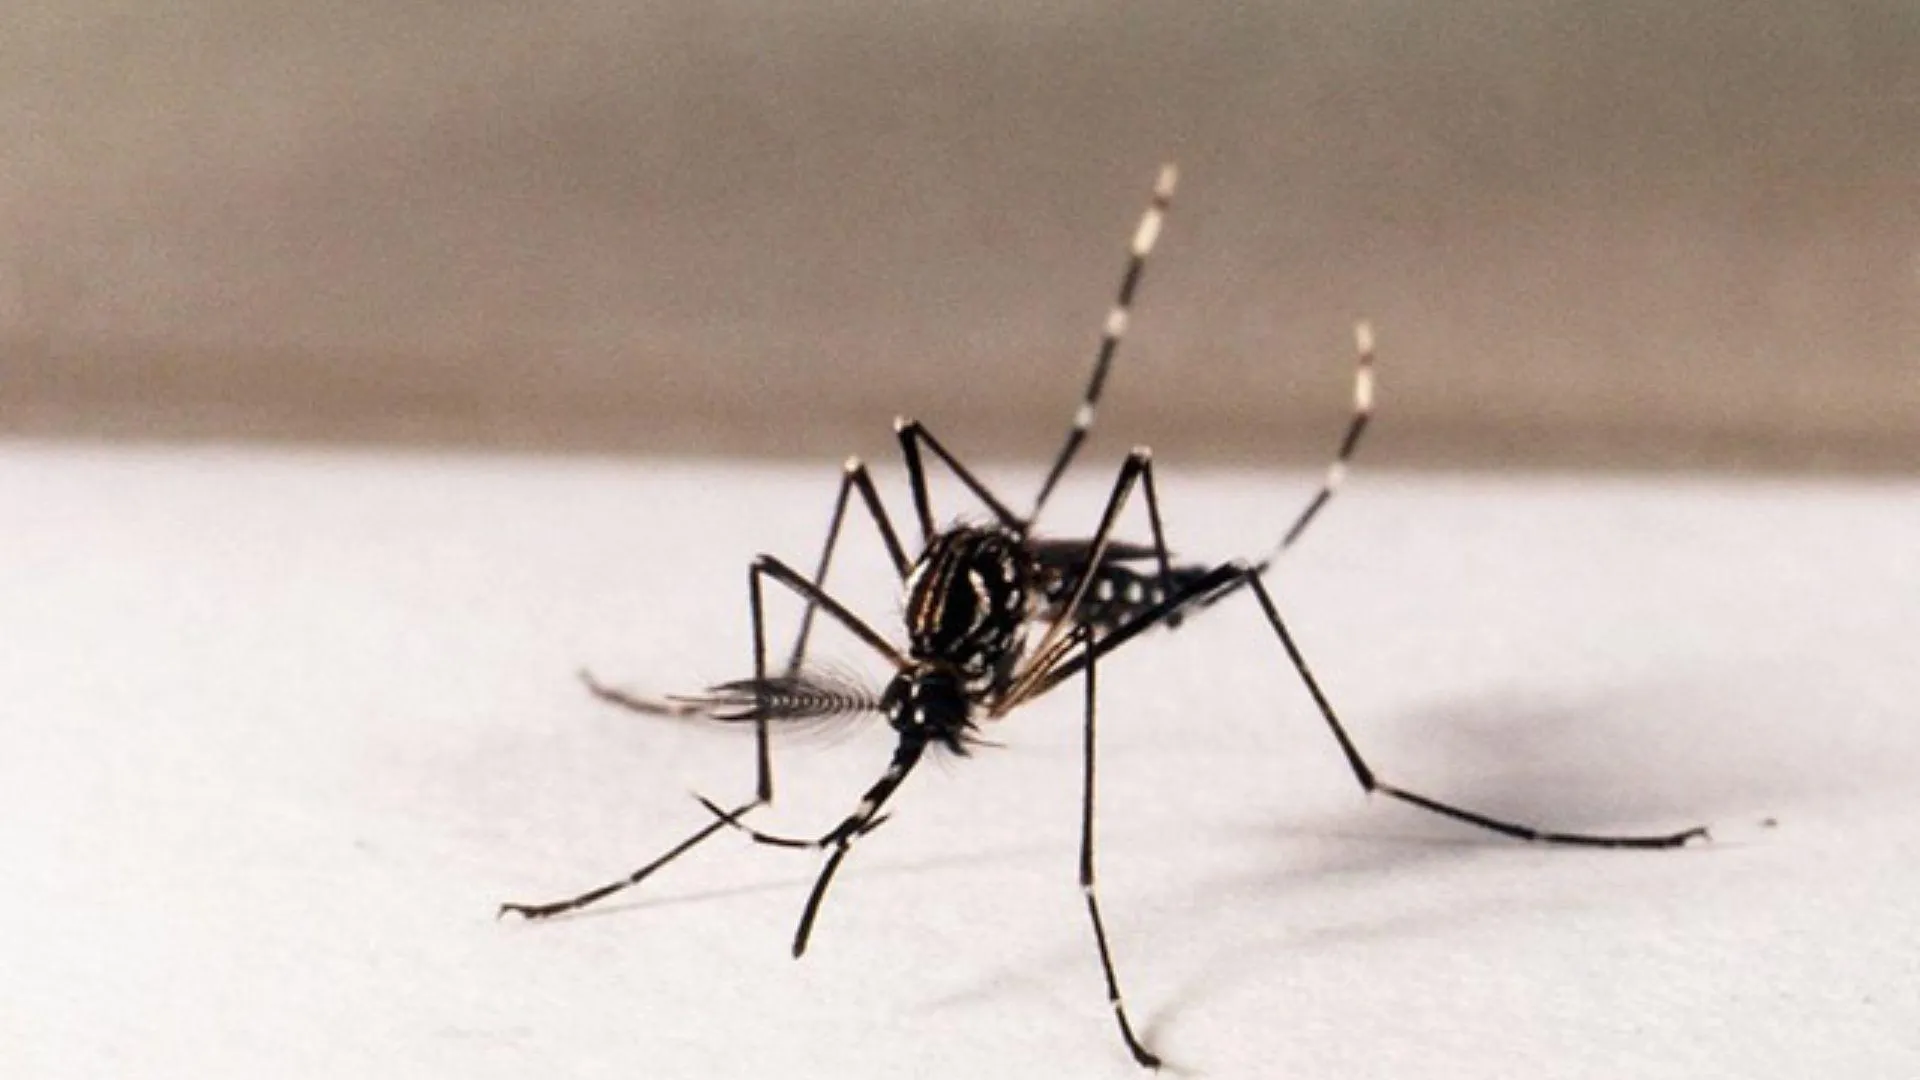 Lançamento: Contra a Dengue 2 Na Cidade